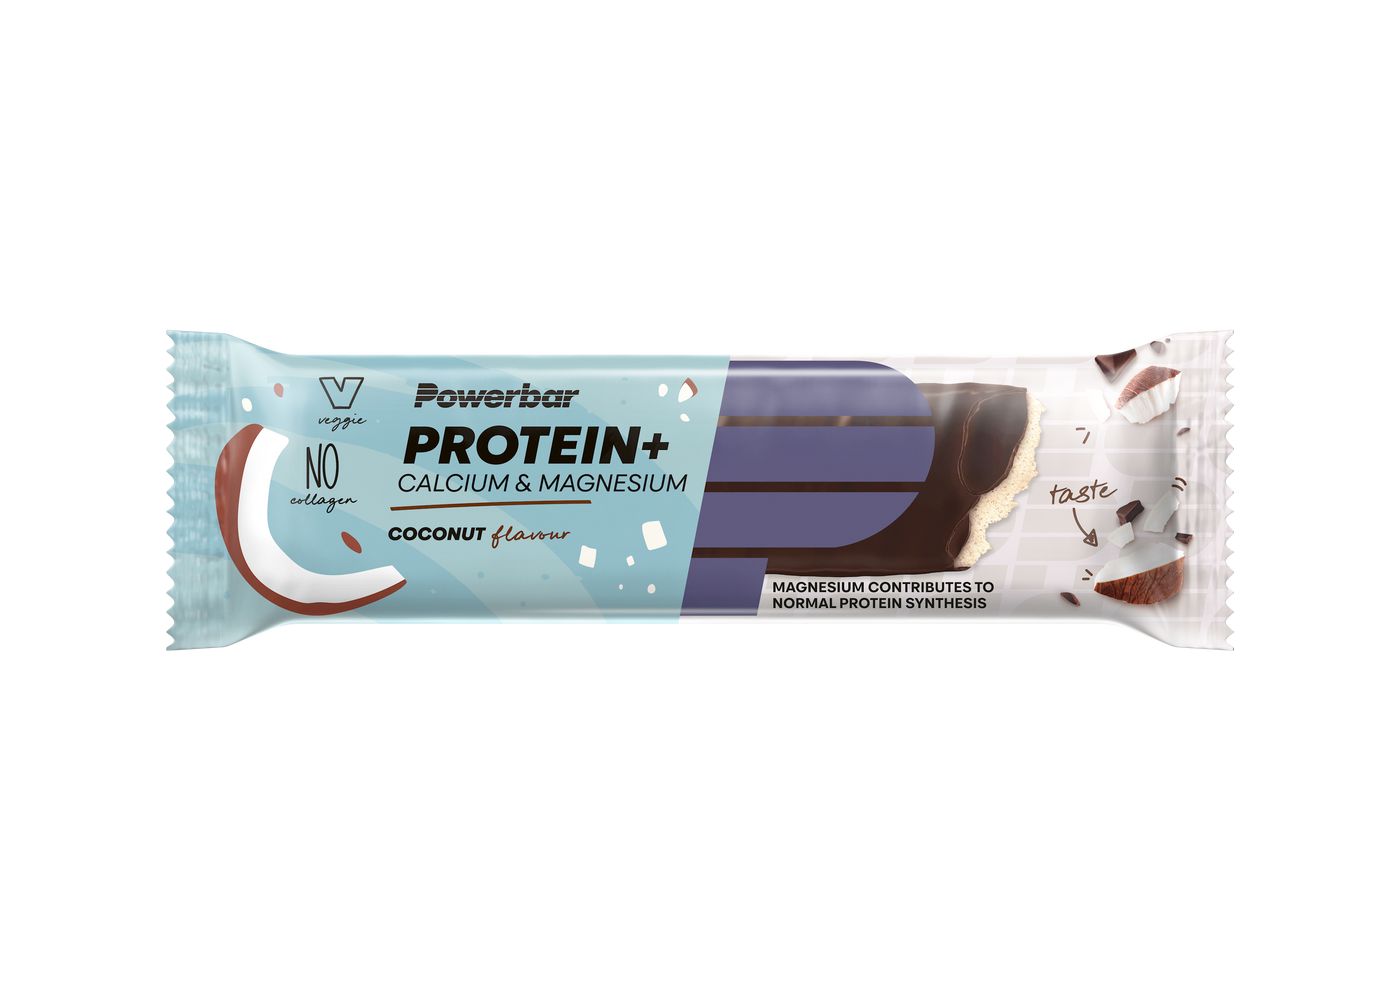 Protein bar, Protein+ Minerals